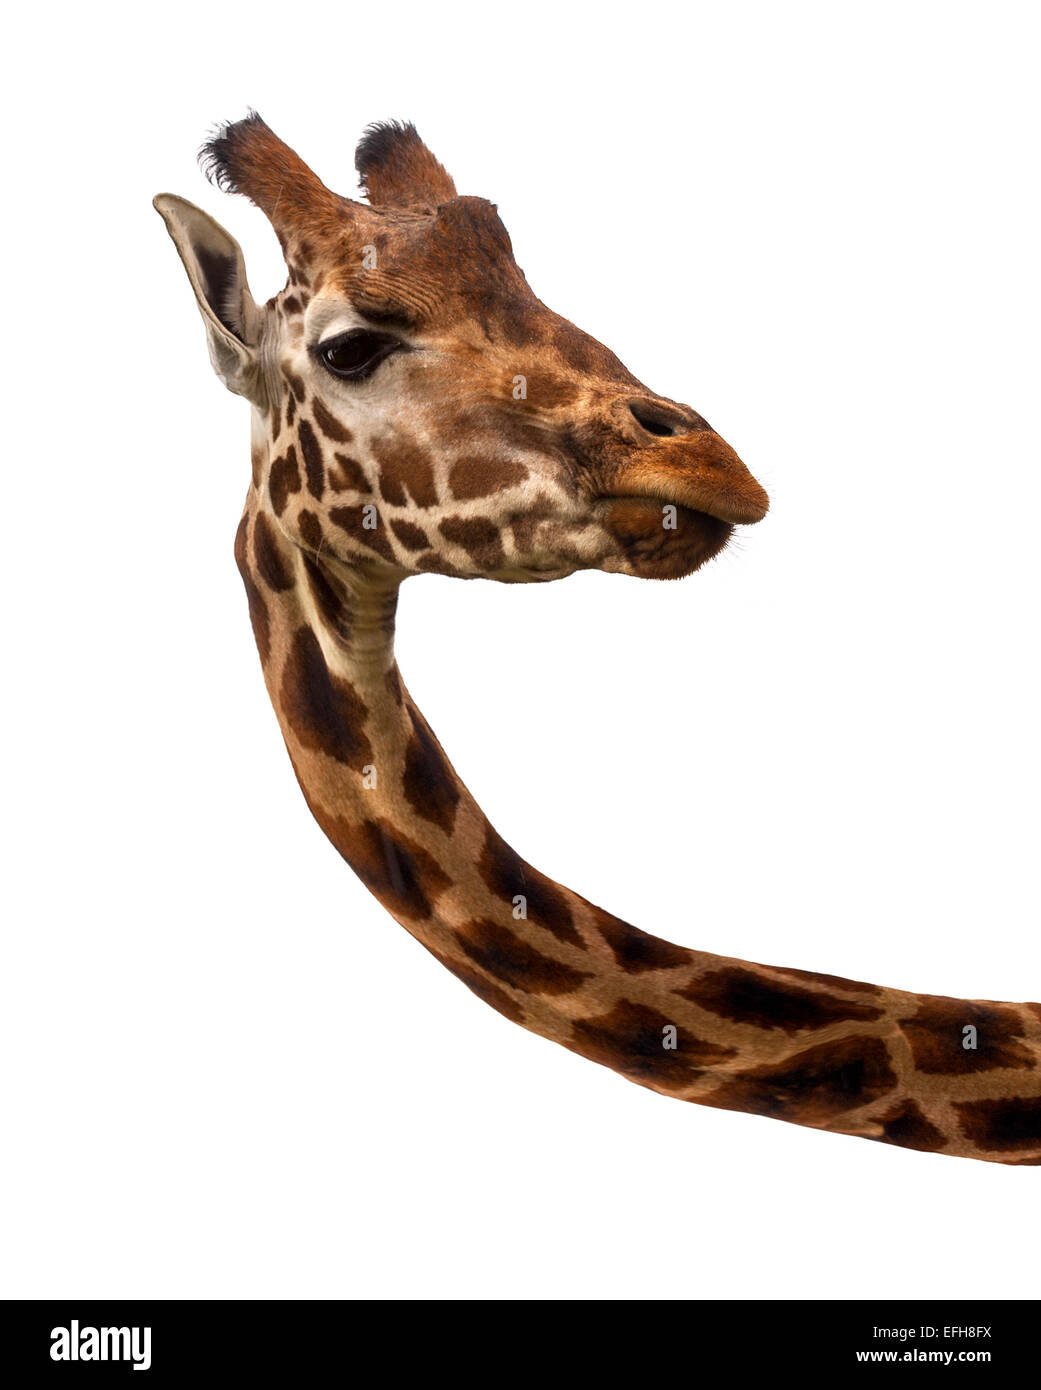 Giraffe della testa e del collo contro uno sfondo bianco Foto Stock